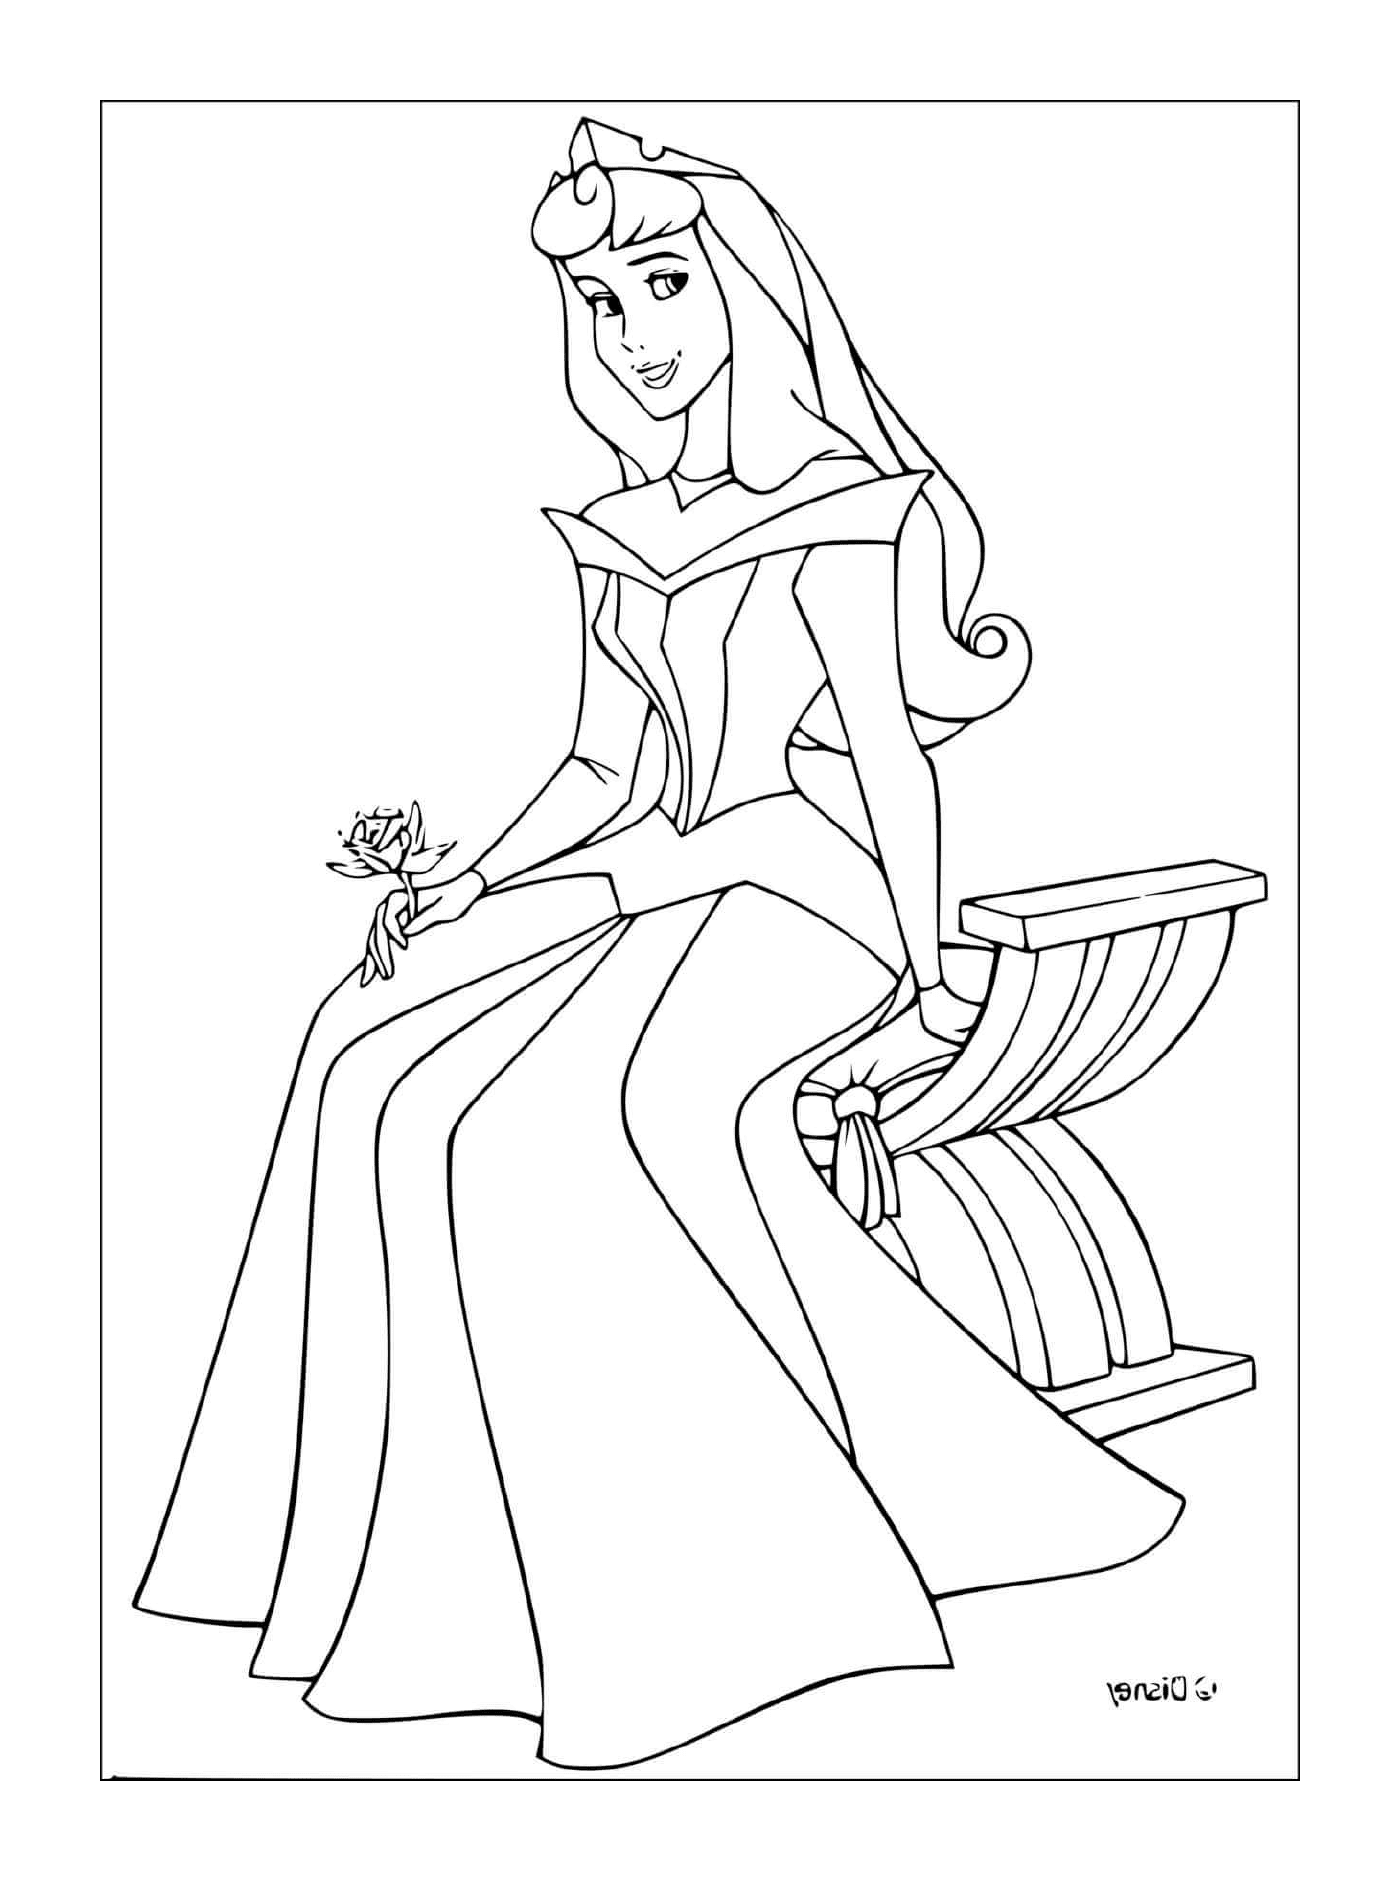   Princesse de La Belle au bois dormant assise avec une tasse de thé 